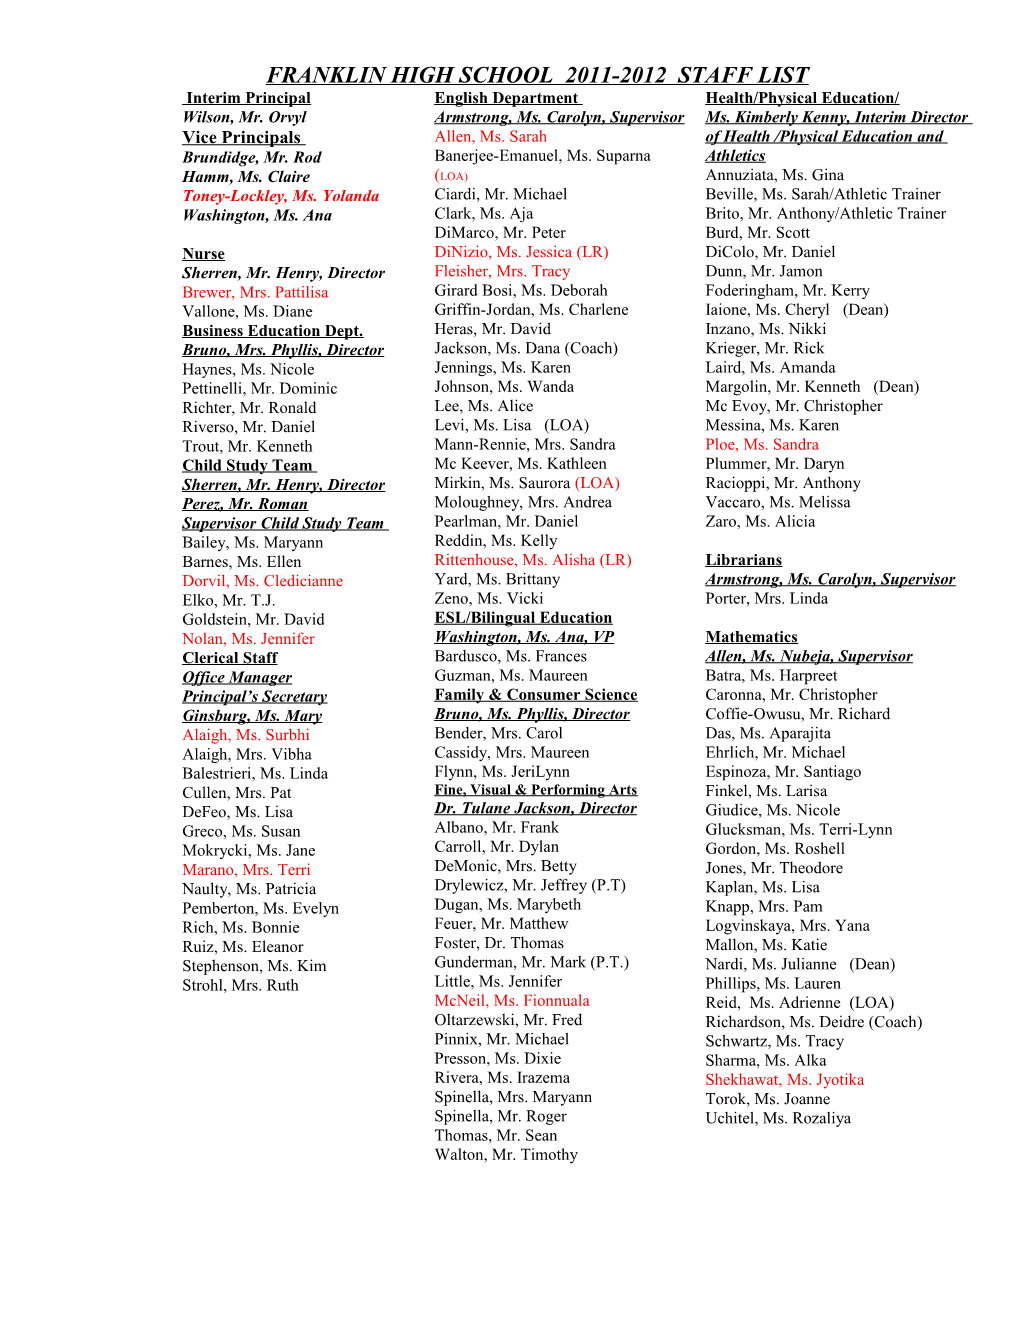 Franklin High School 2011-2012 Staff List